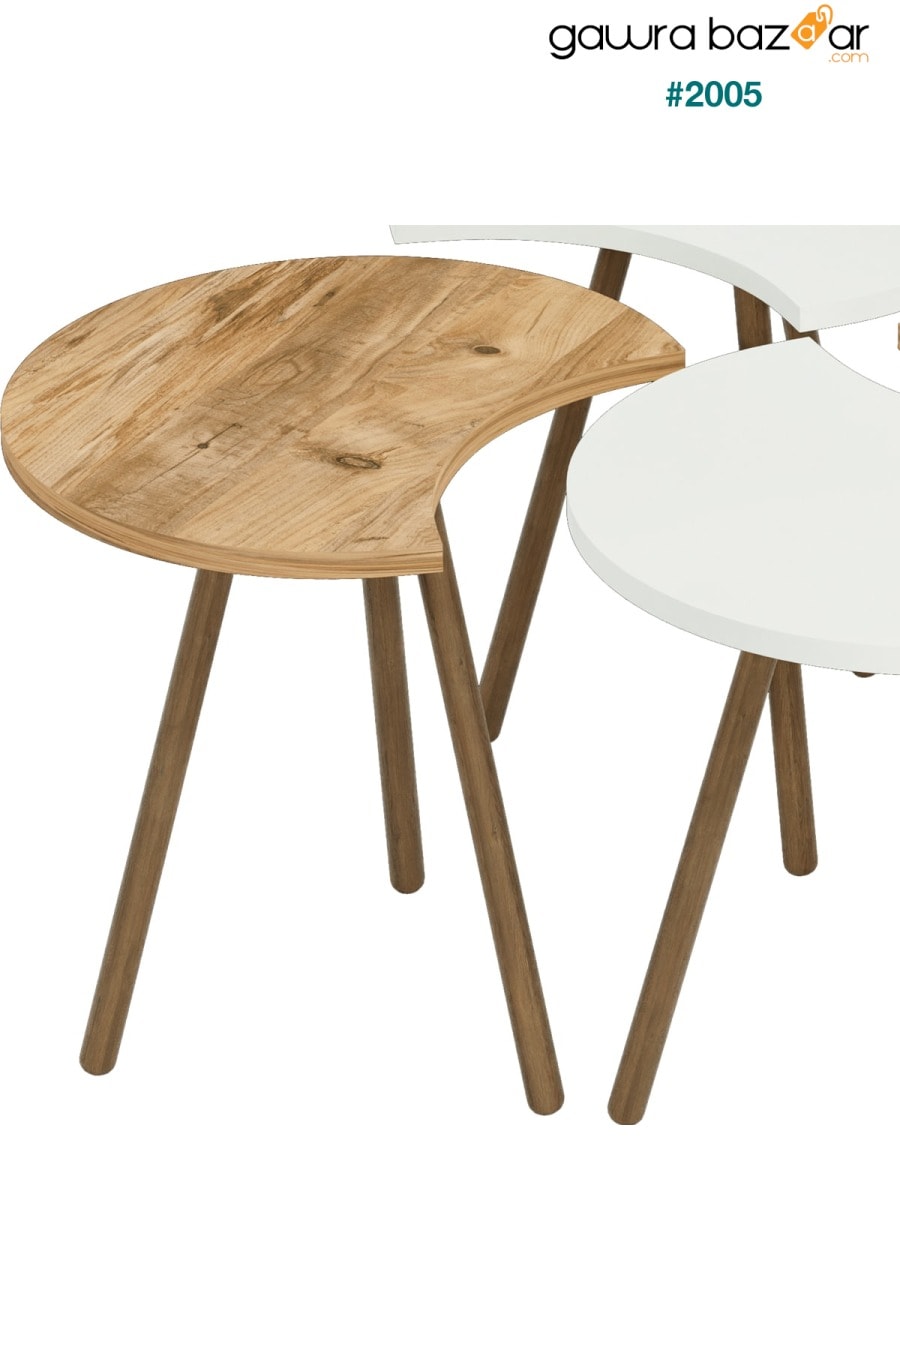 طاولة وسط بأربعة أرجل خشبية متداخلة متداخلة - أبيض أتلانتيكام interGO 3